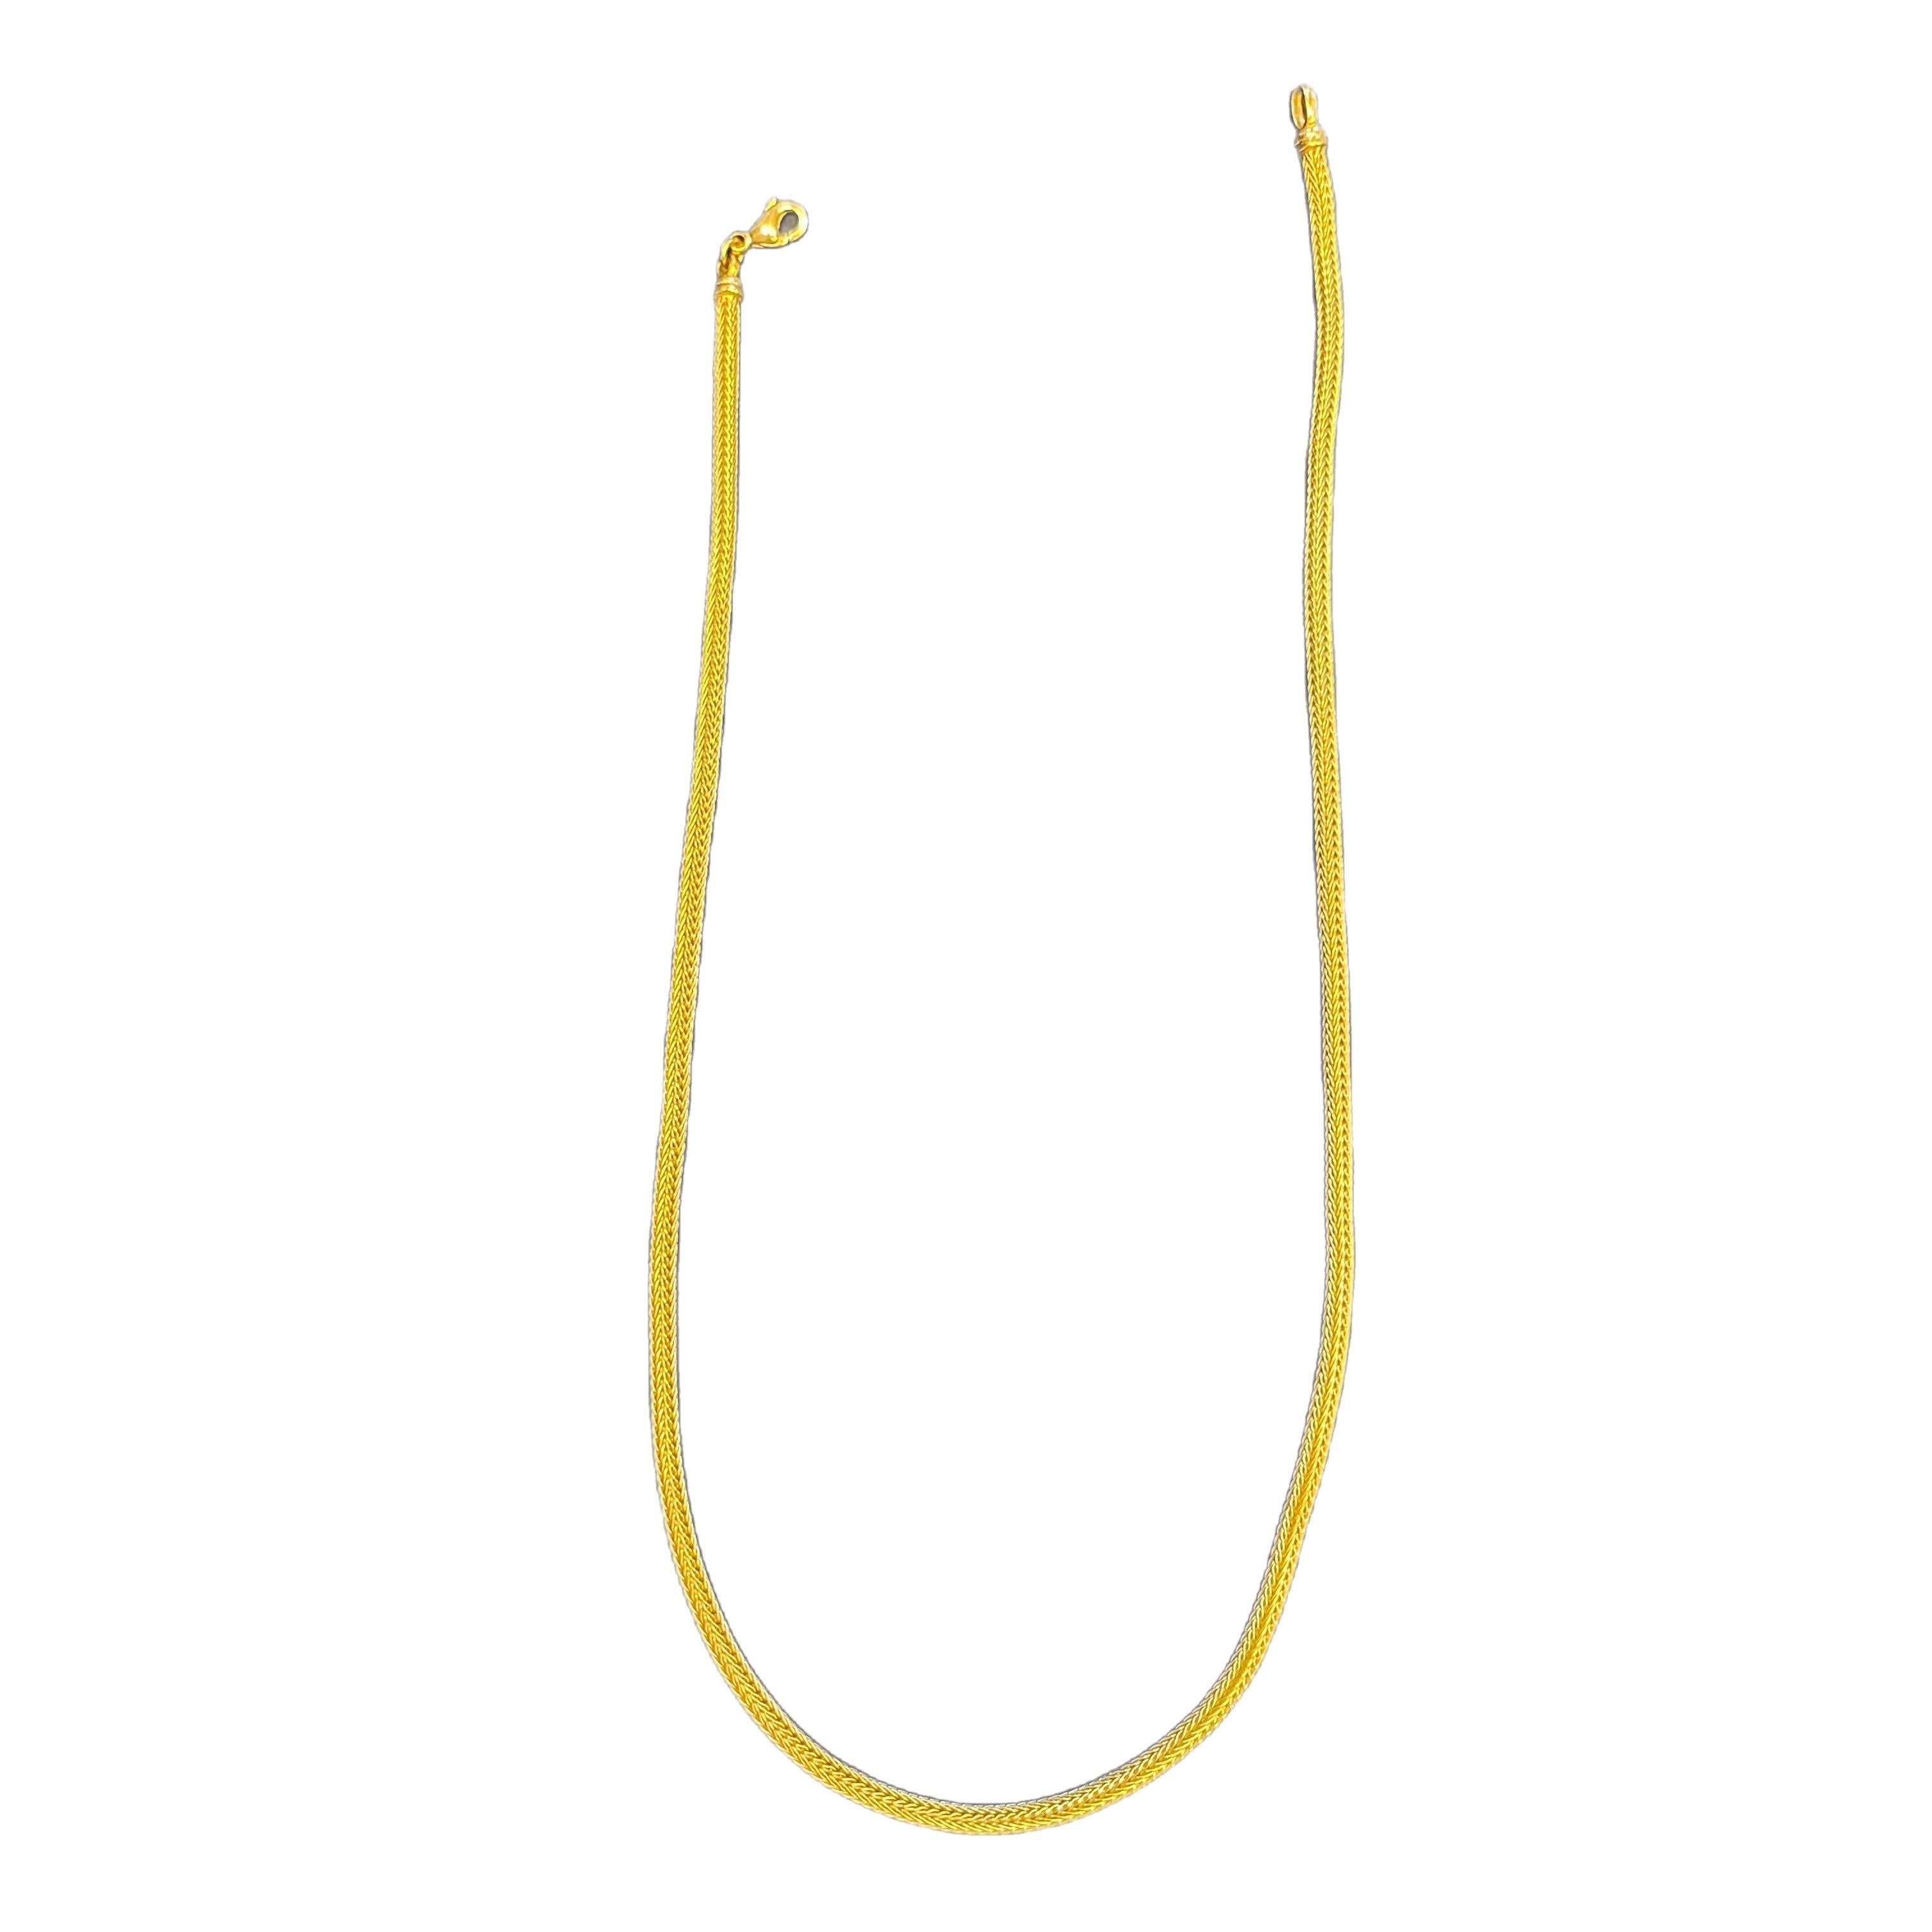 Halskette aus Gelbgold, hergestellt in Deutschland. 
Diese leichte und einfach zu tragende Halskette ist ein großartiges Freizeitstück mit elegantem Flair. 
Gefertigt aus gewebtem 18-karätigem Gold von Finley. Tragen Sie es schlicht oder als Basis